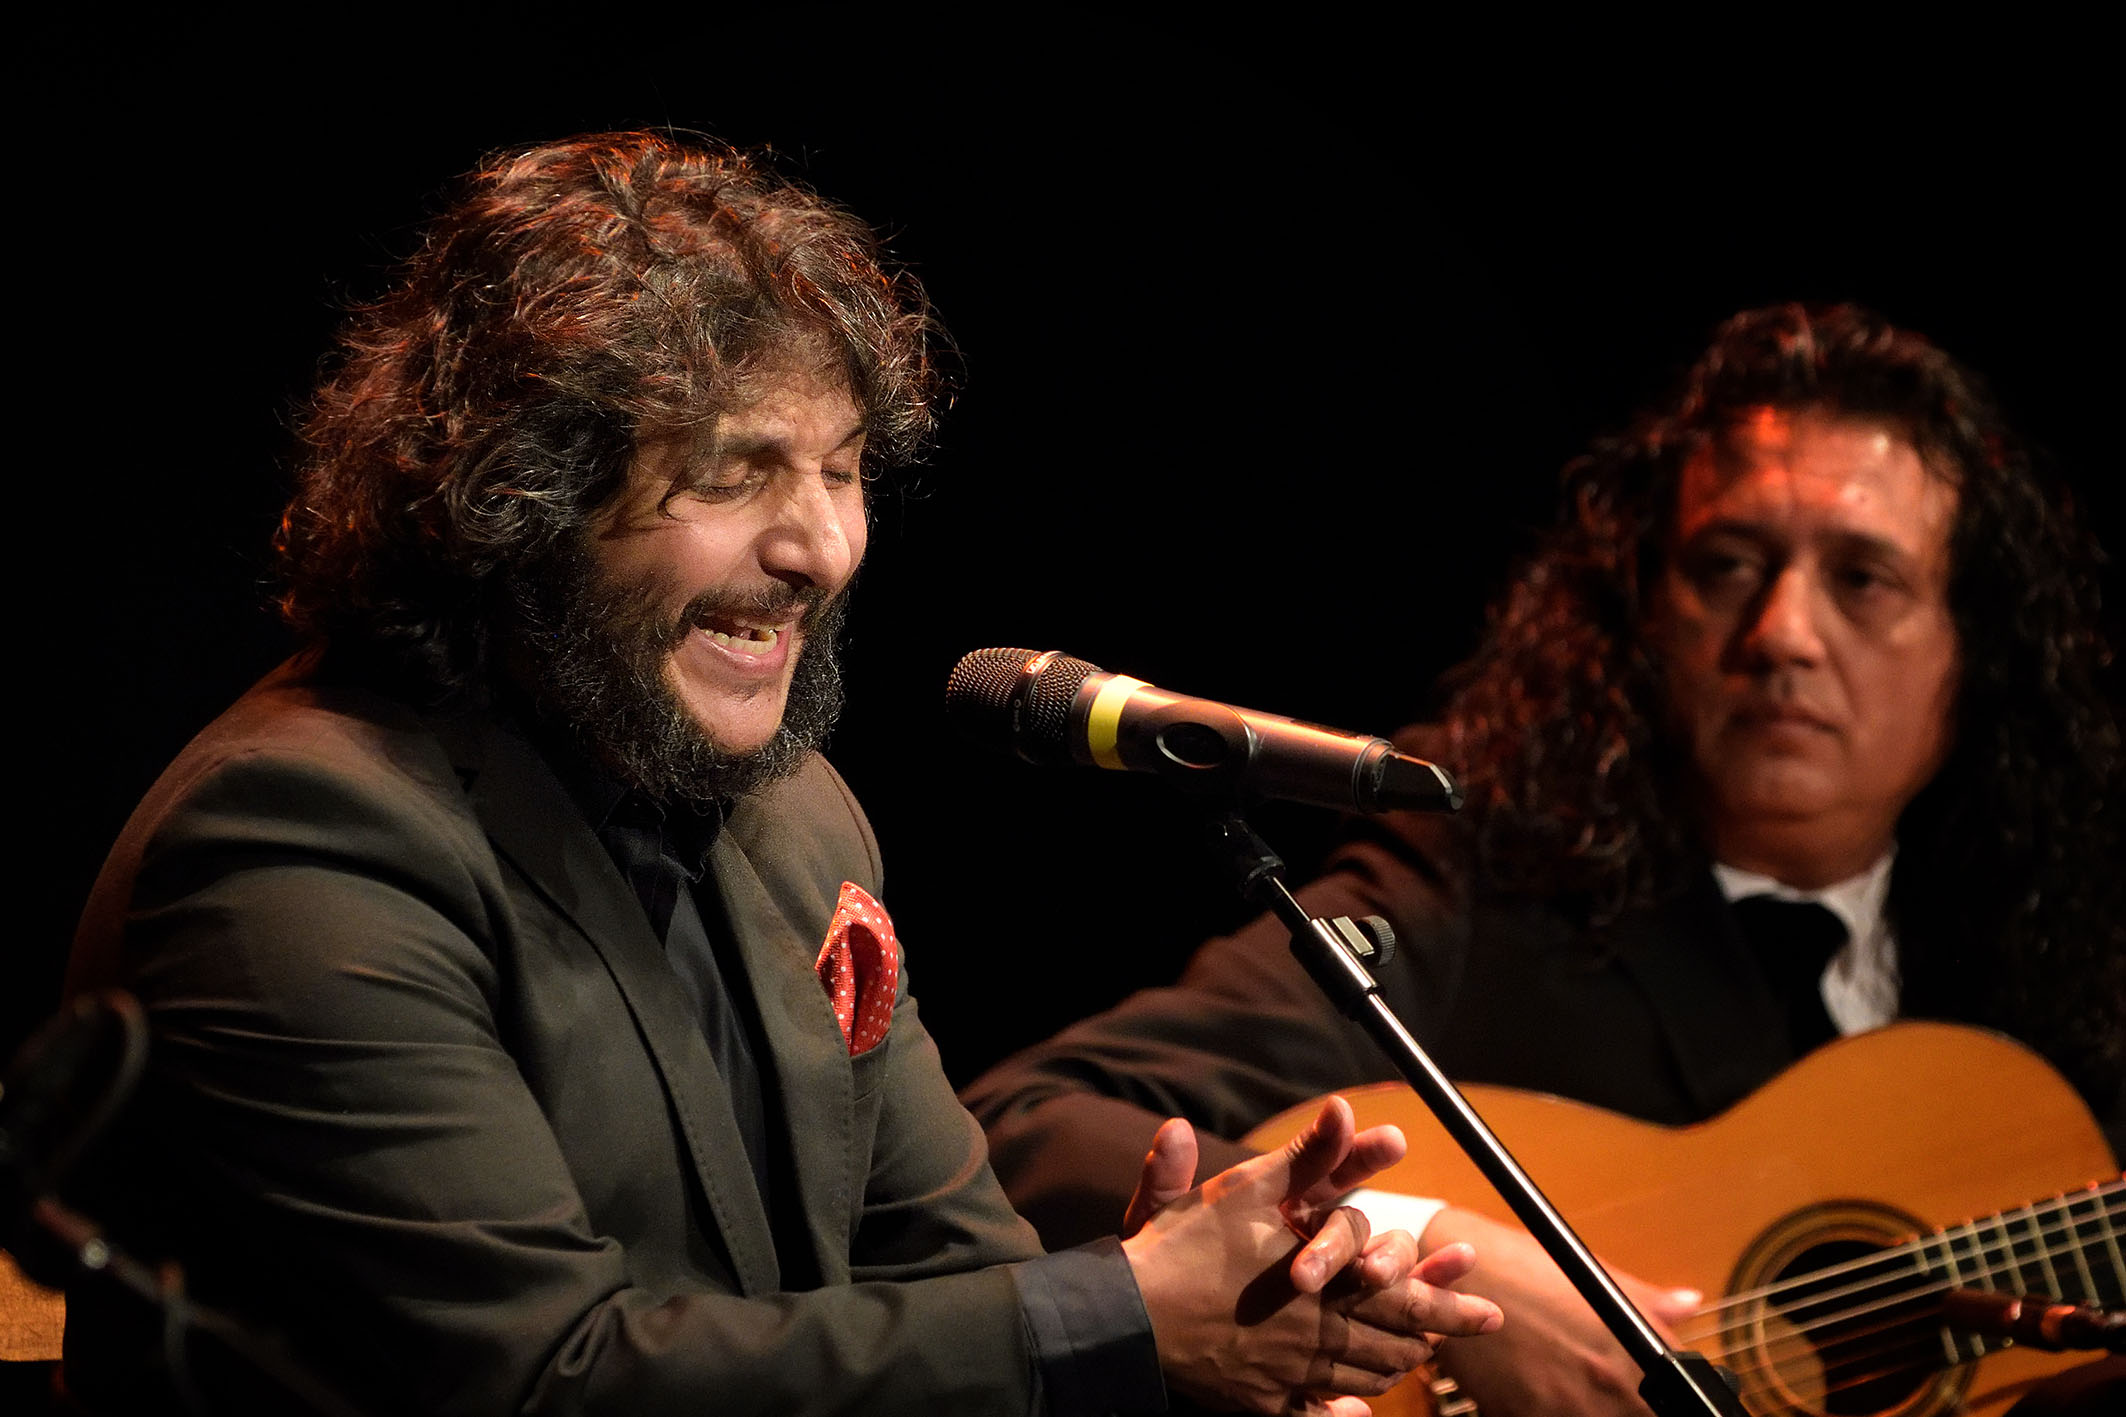 Aliado Incomodidad Cuervo Antonio Reyes y Diego Amaya redondean una gran noche flamenca -  Ayuntamiento de Argamasilla de Alba